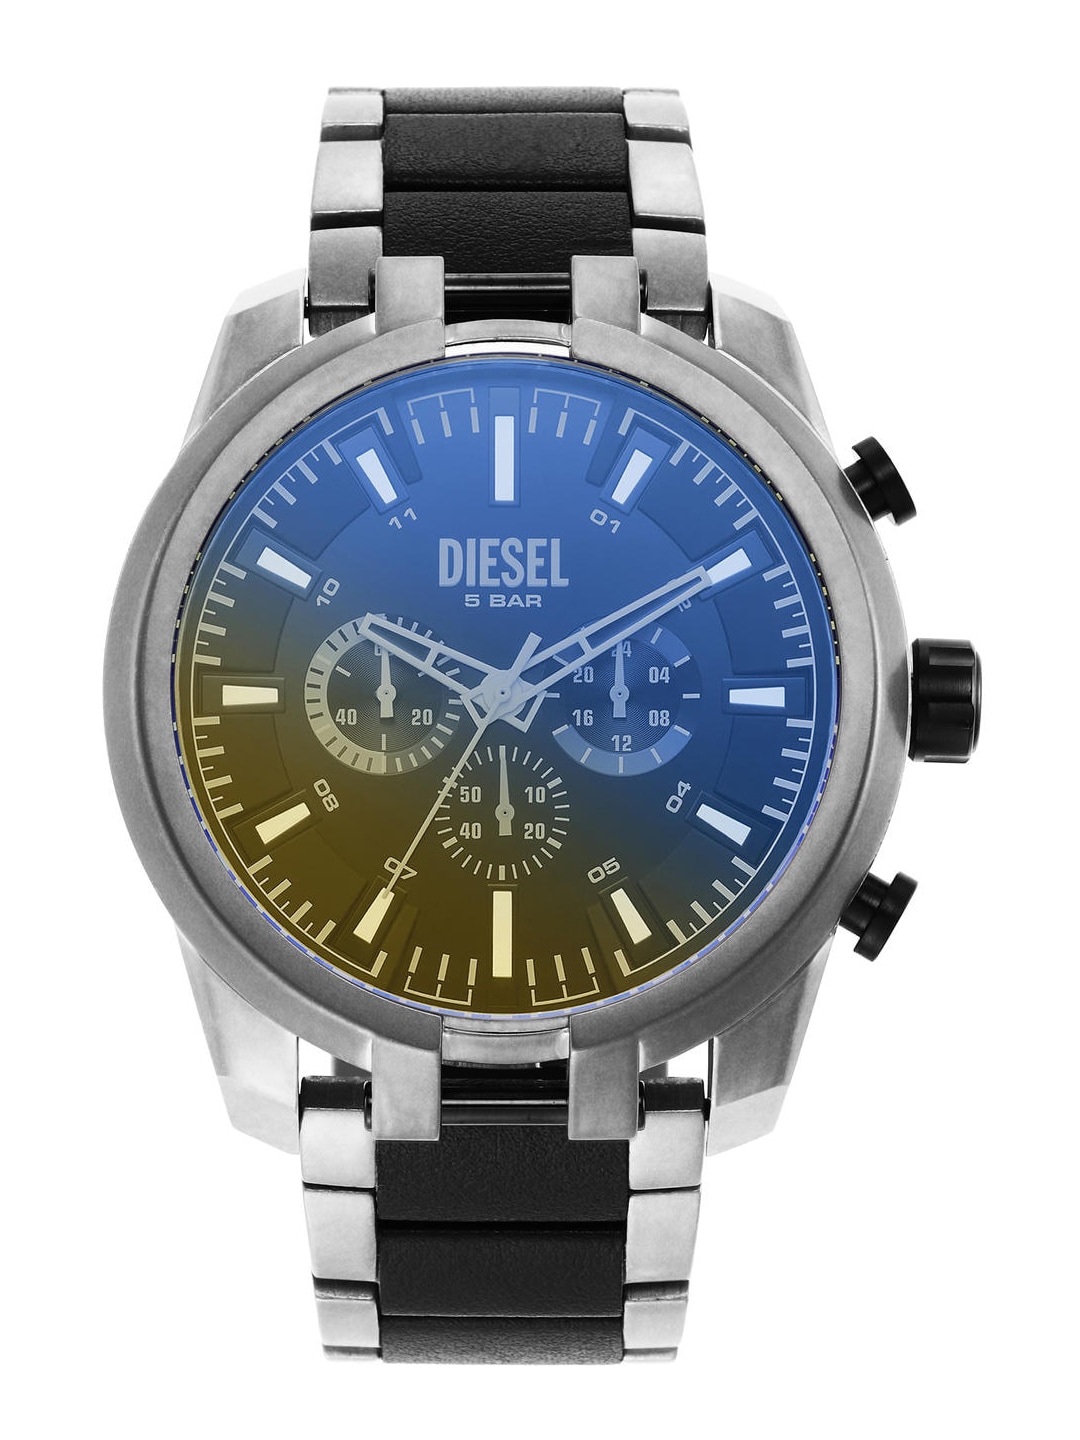 Buy Diesel Watches Online In India